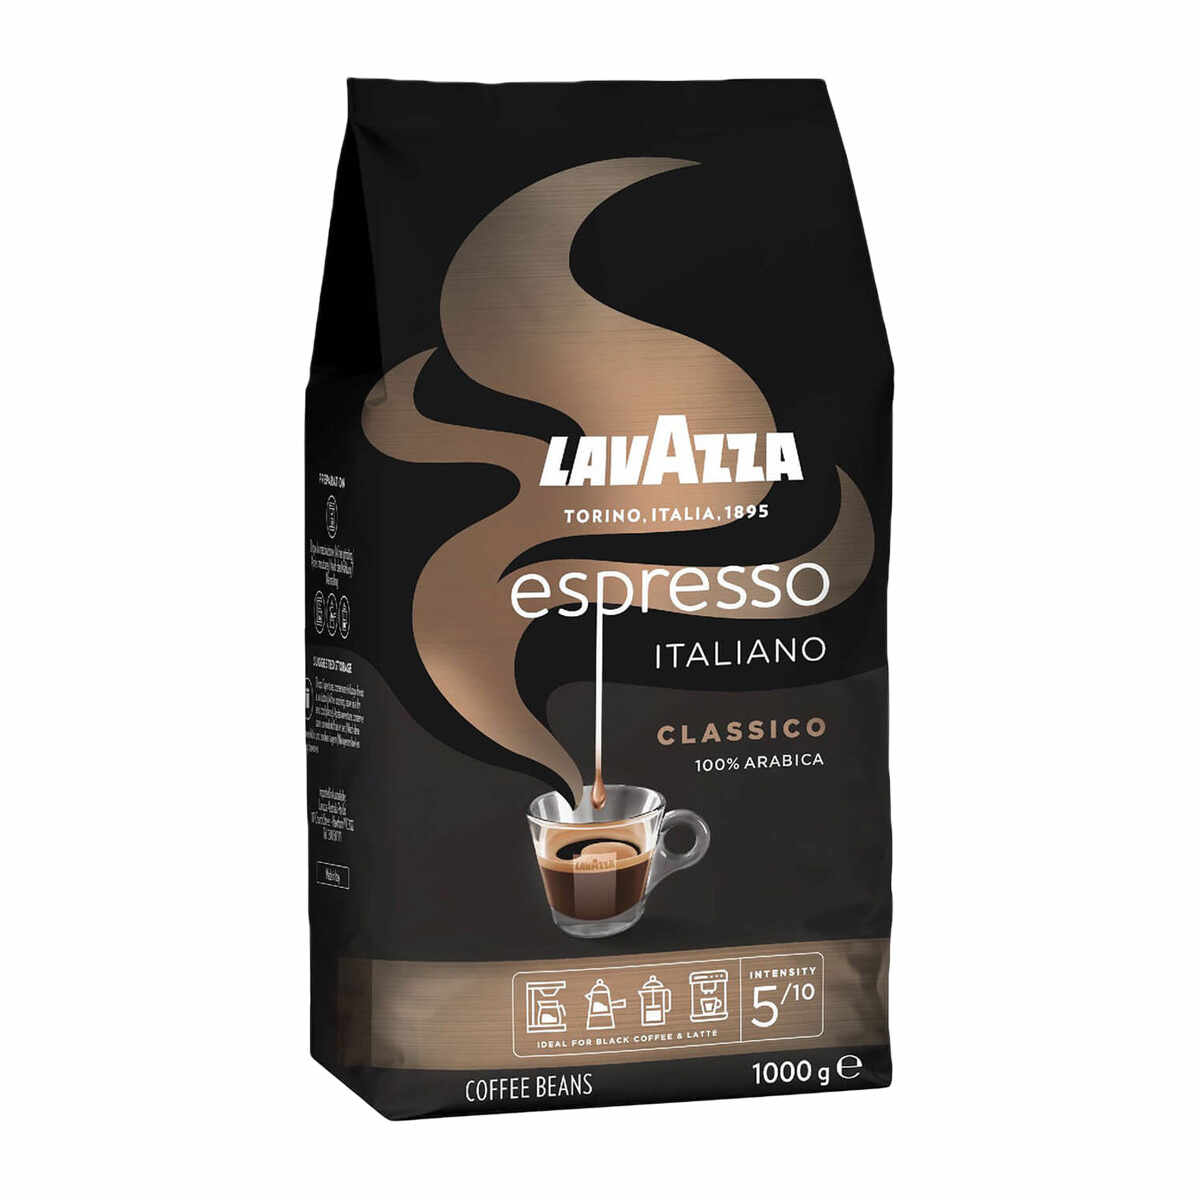 Lavazza Espresso Italiano Classico cafea boabe 1 kg